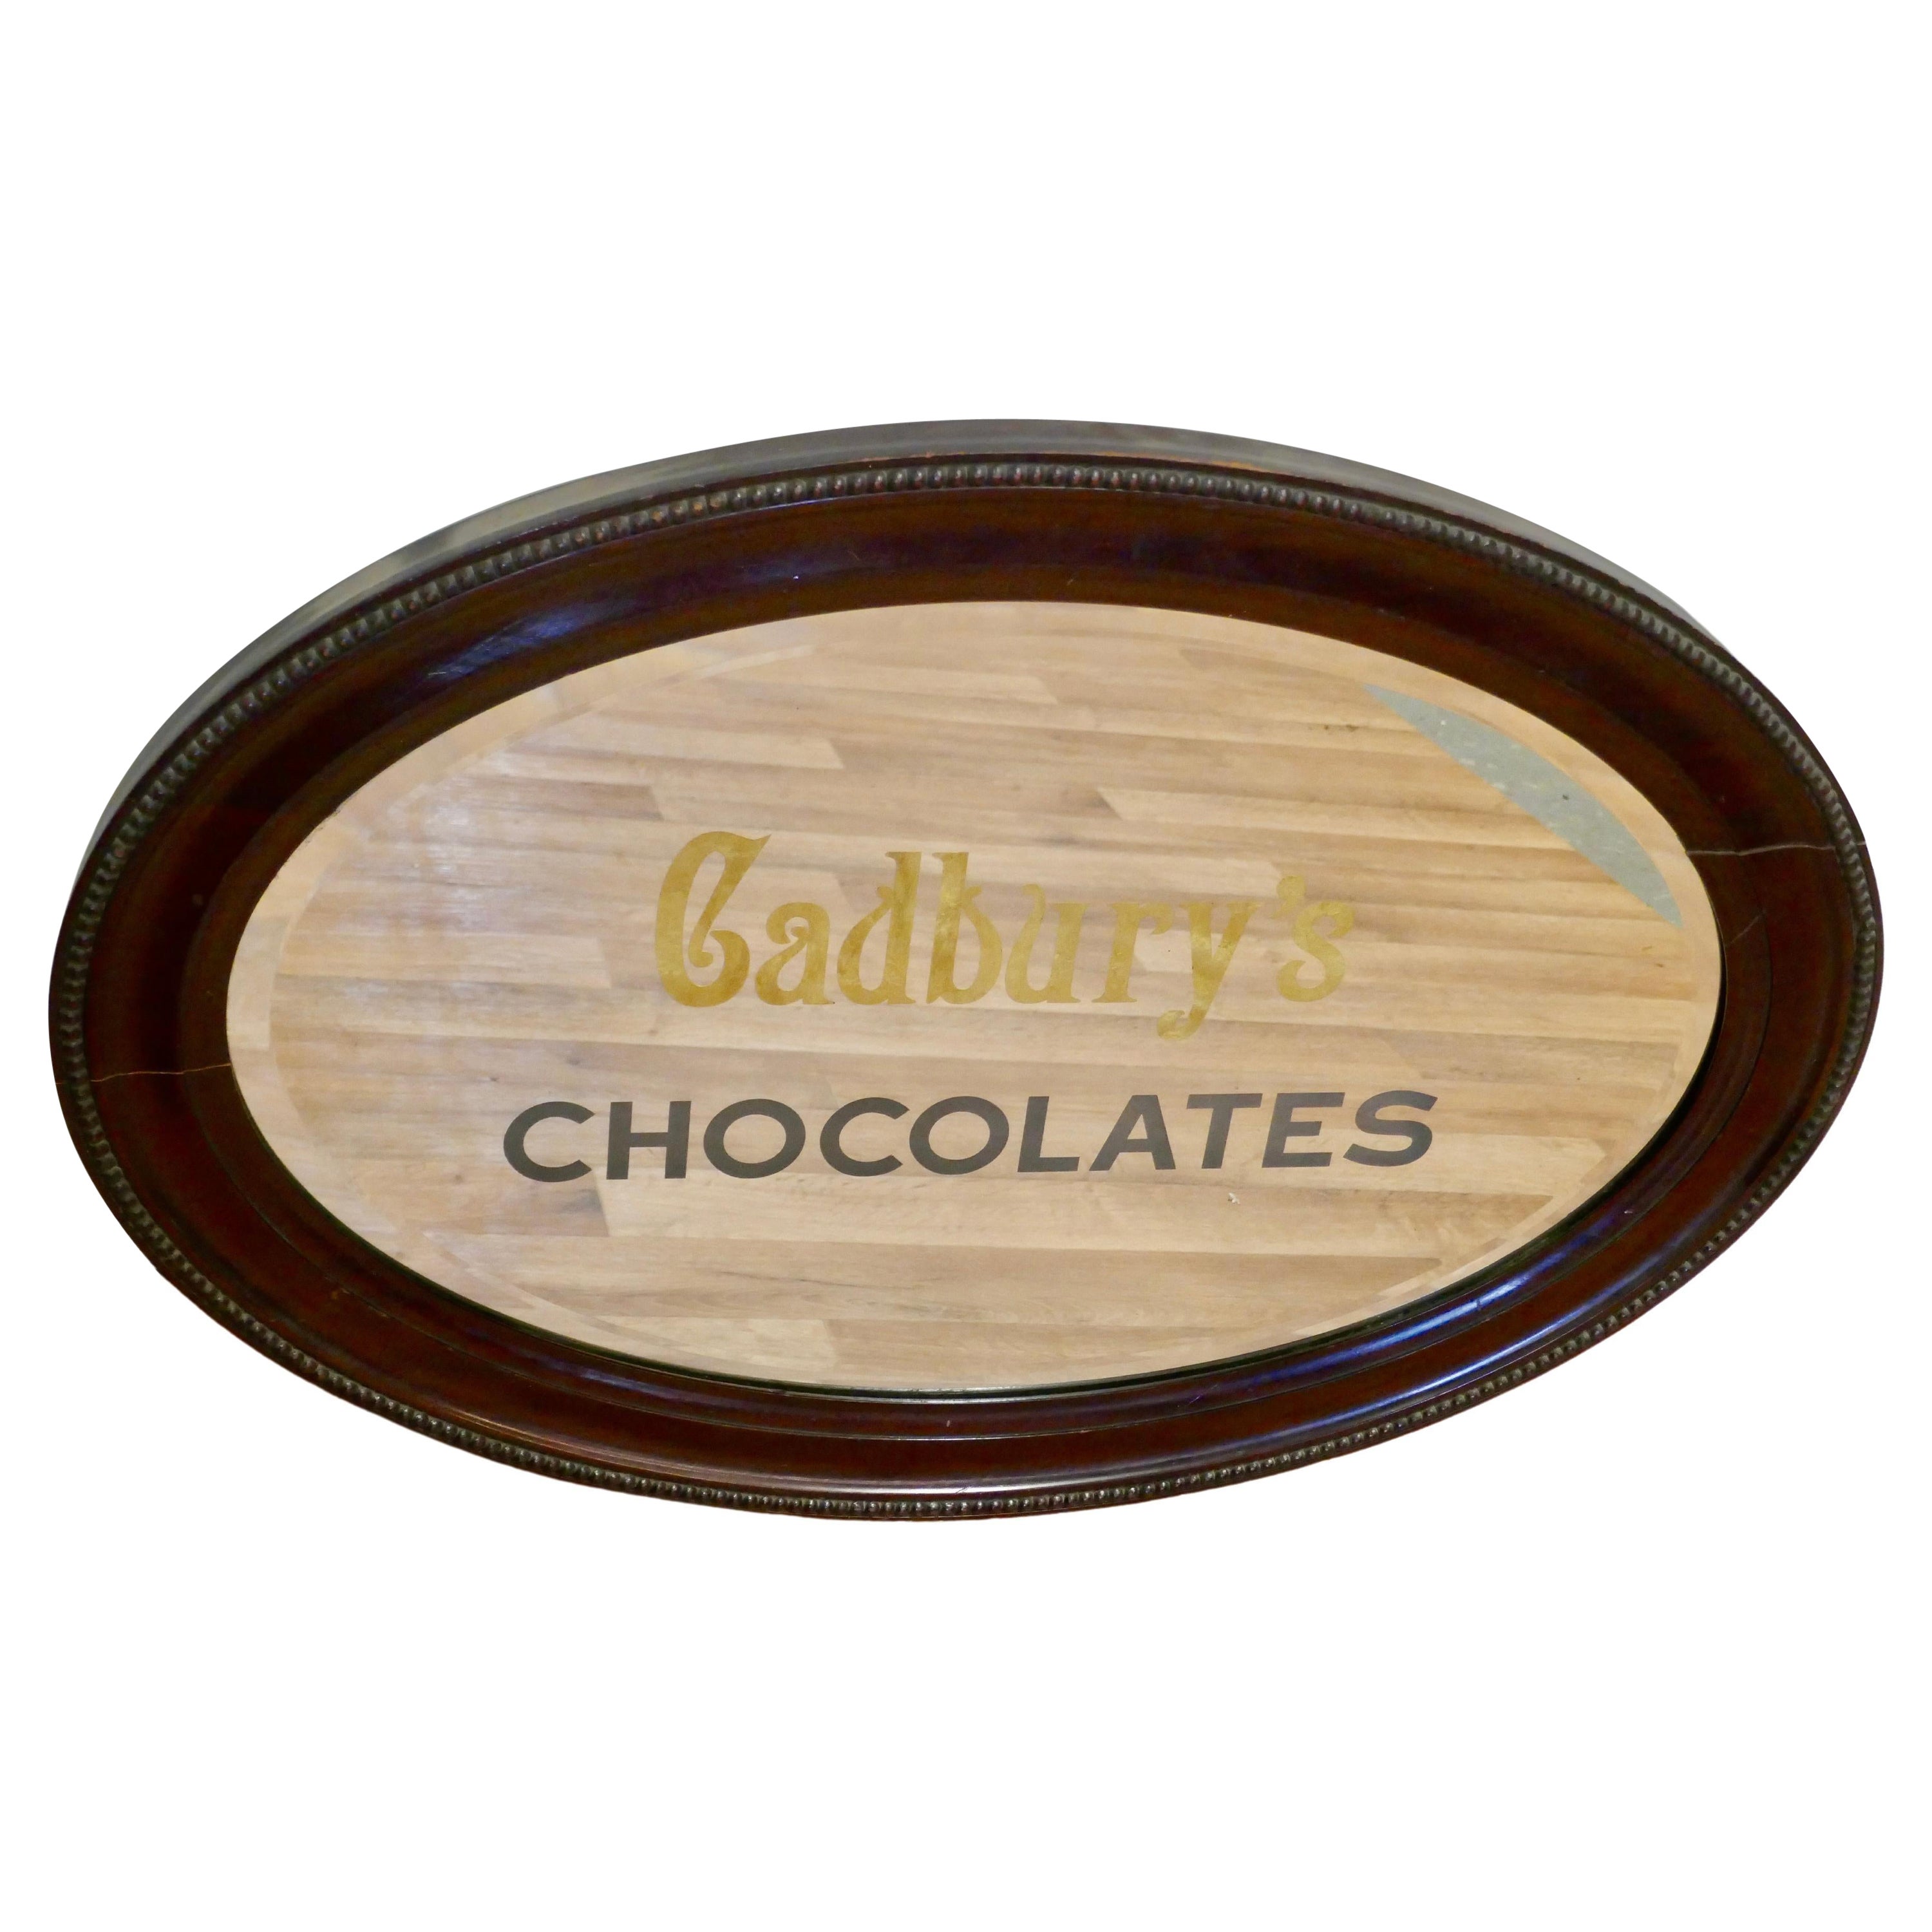 Miroir publicitaire édouardien Cadburys Chocolates en vente